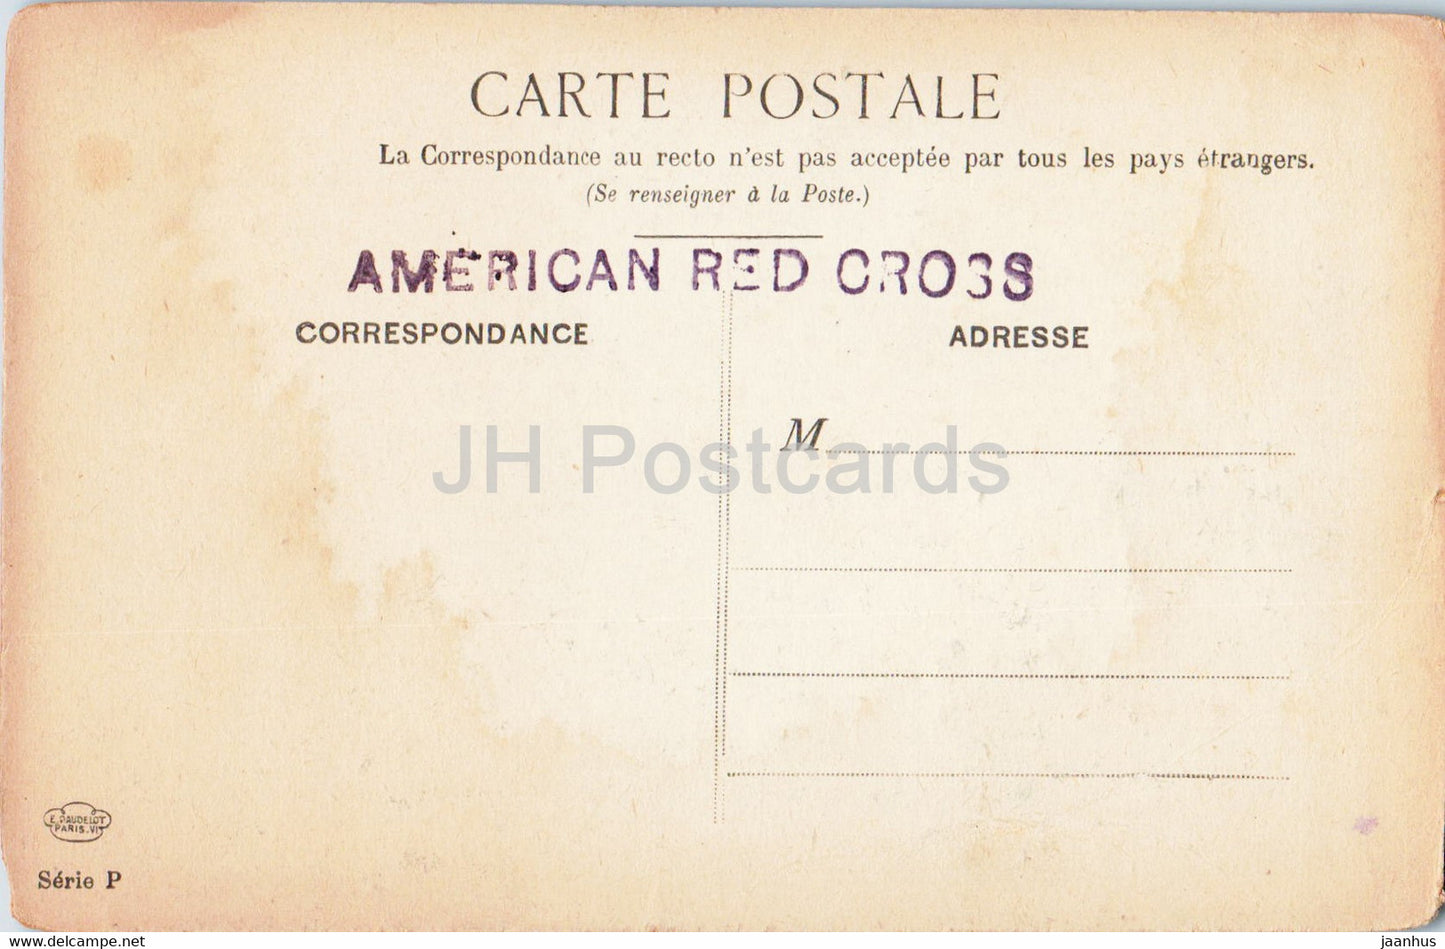 Paris - Notre Dame - Le Tropeau des Monstres - Illustration - Amerikanisches Rotes Kreuz - alte Postkarte - Frankreich - unbenutzt